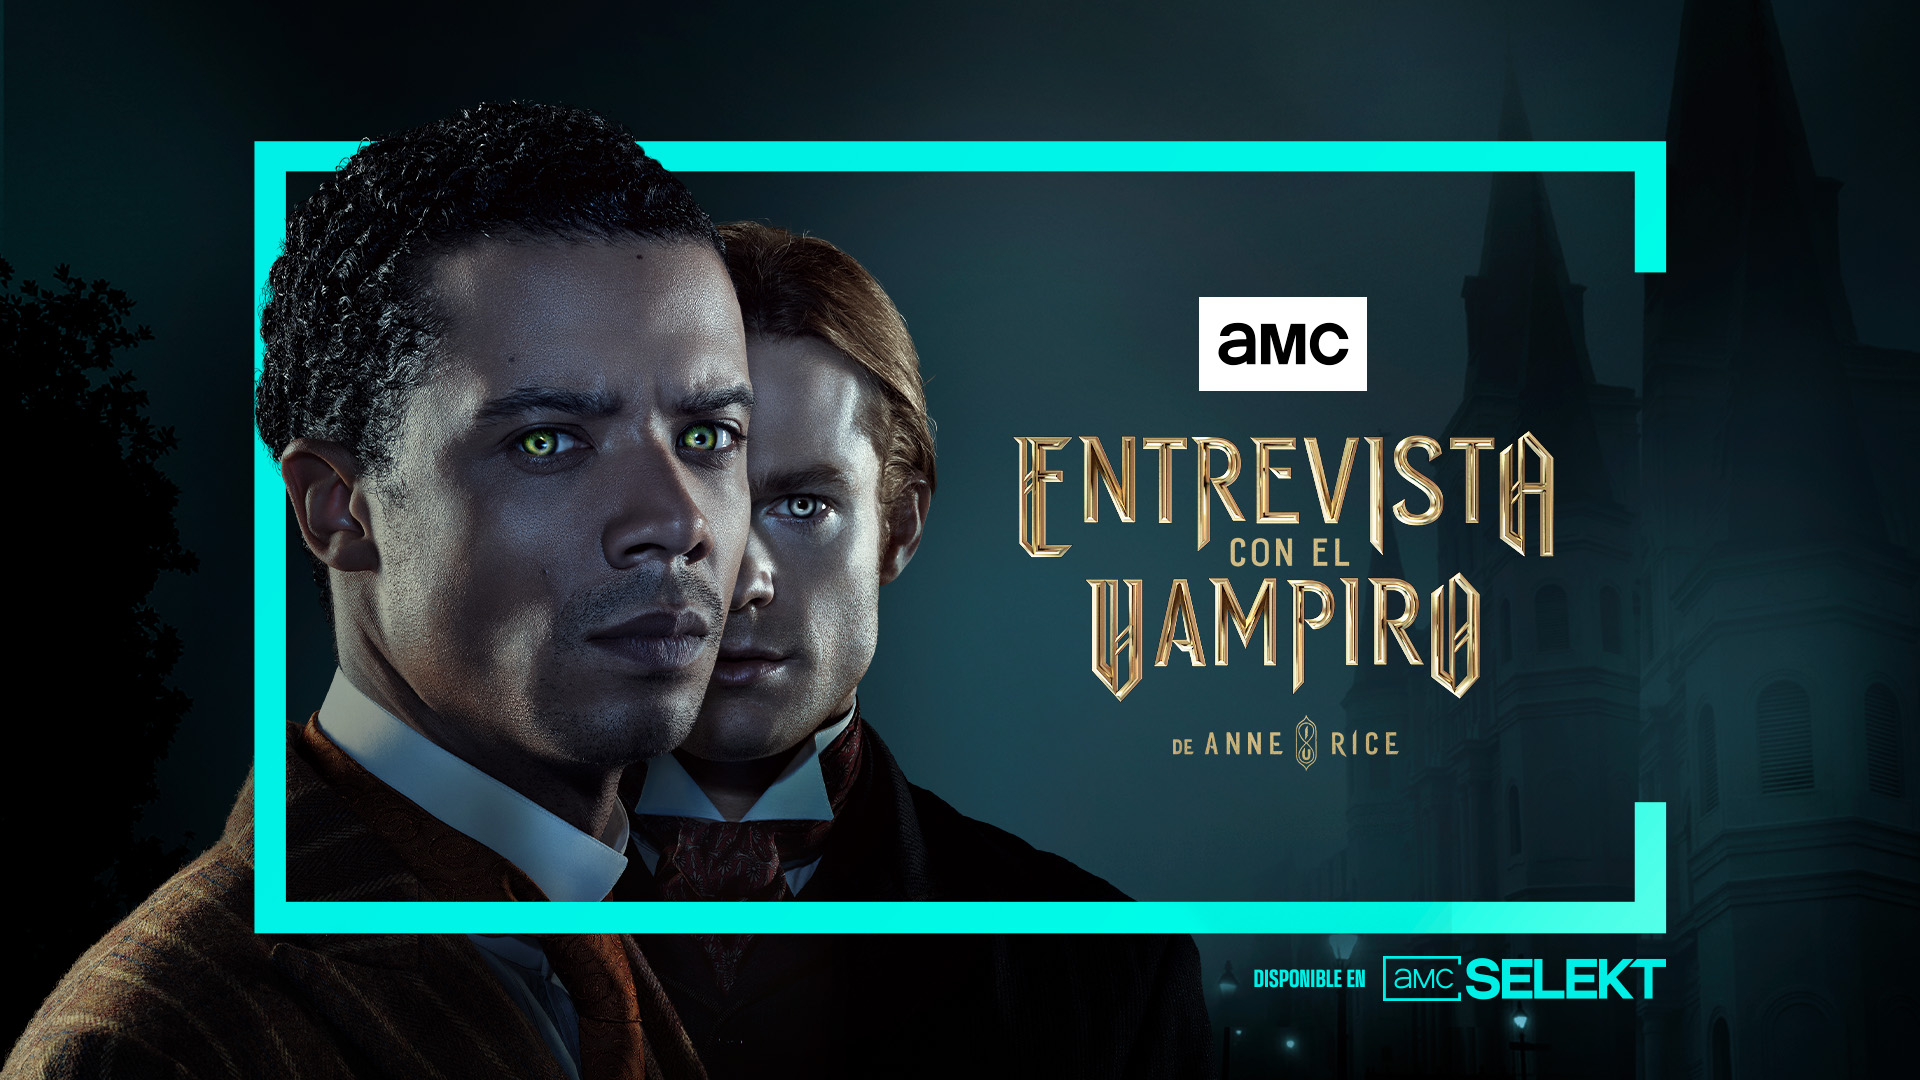 El universo de Anne Rice llega al canal de televisión AMC con el estreno de ‘Entrevista con el vampiro’